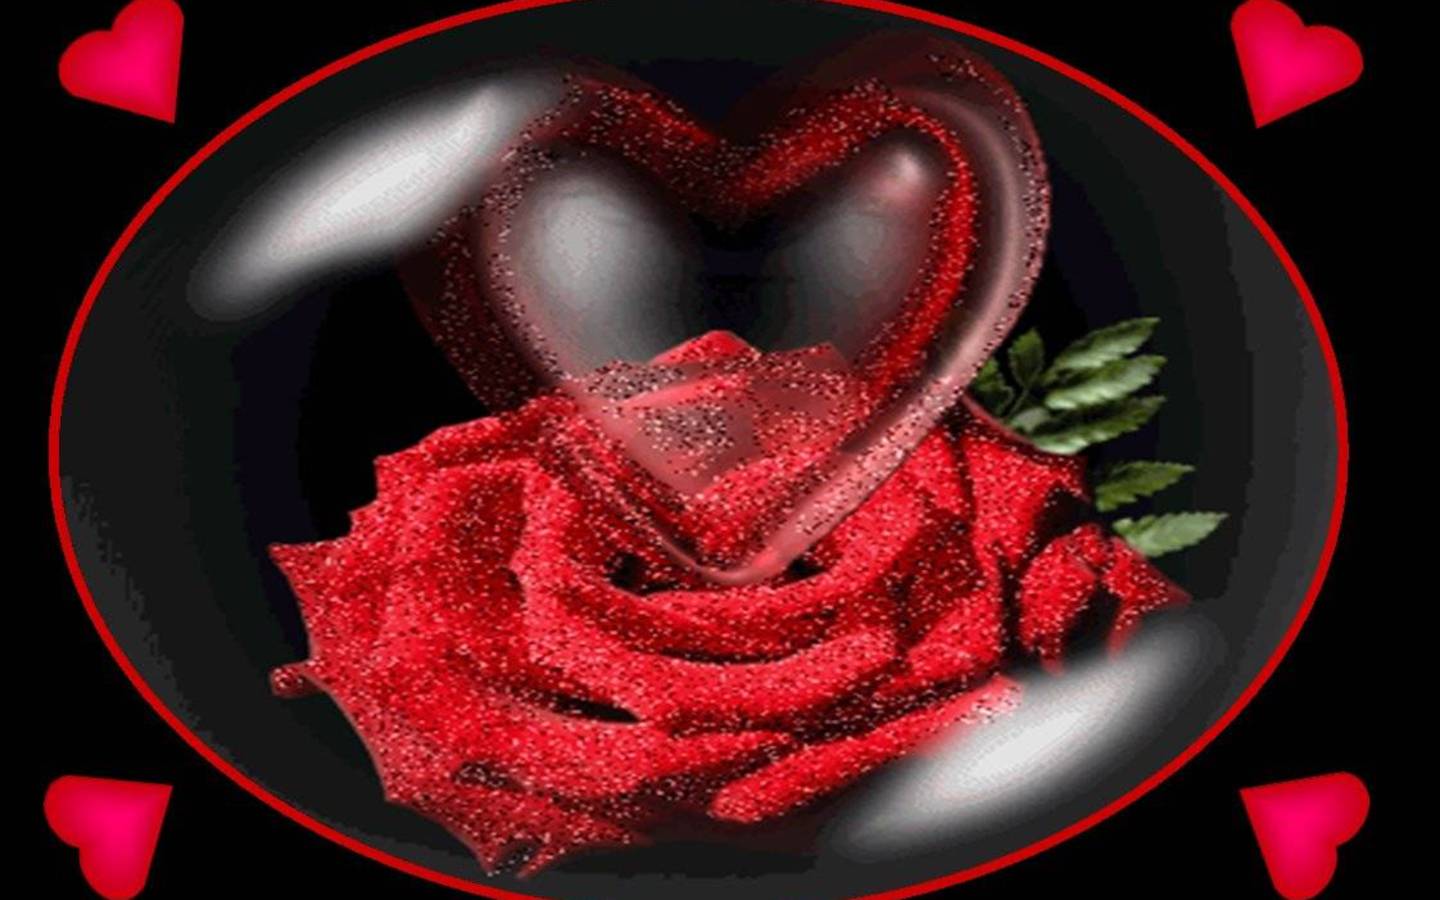 3d heart wallpaper,garden roses,rose,red,love,valentine's day